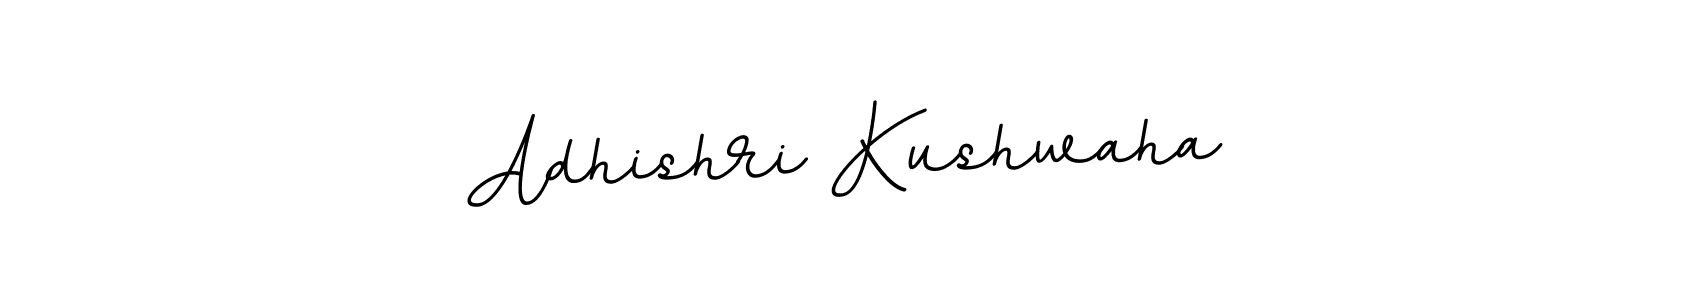 How to Draw Adhishri Kushwaha signature style? BallpointsItalic-DORy9 is a latest design signature styles for name Adhishri Kushwaha. Adhishri Kushwaha signature style 11 images and pictures png